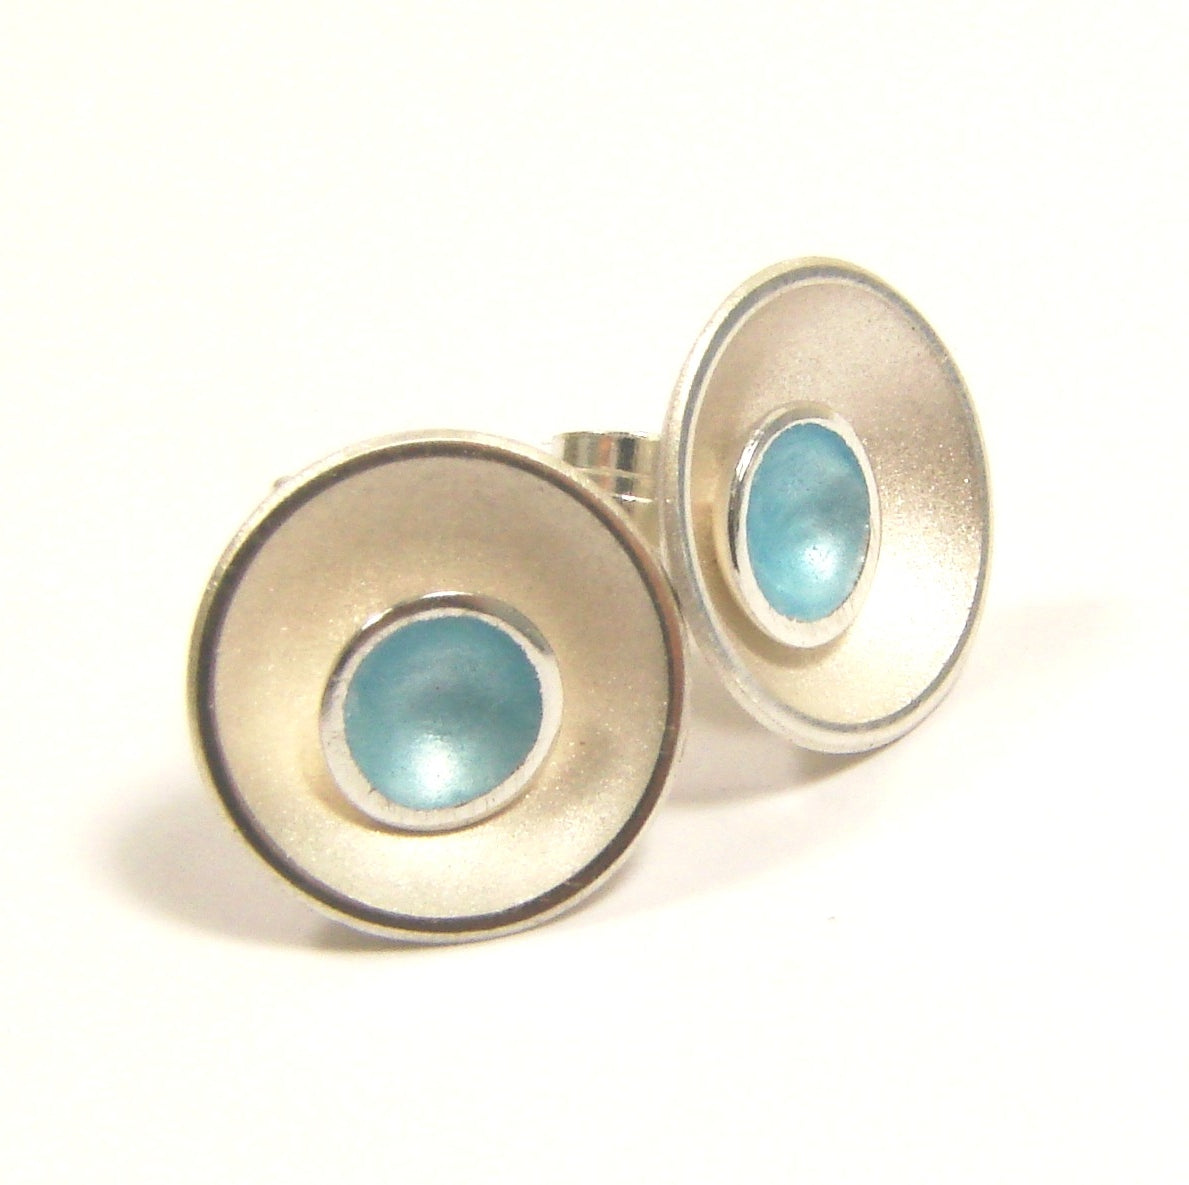 Silver & Enamel 2-in-1 Stud Earrings - Ice